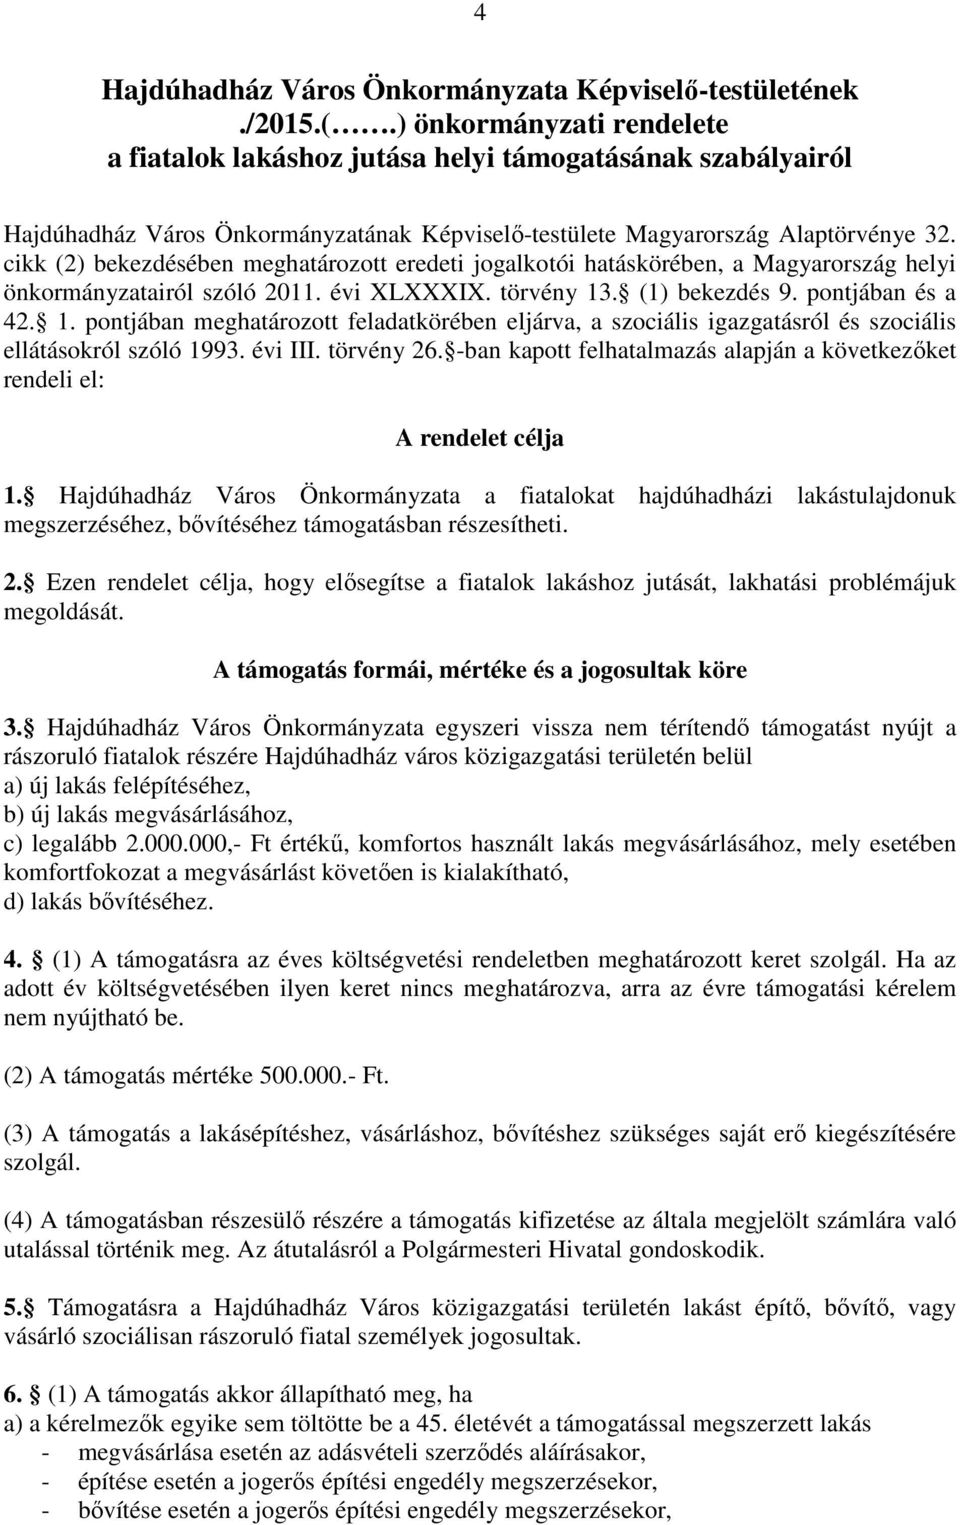 cikk (2) bekezdésében meghatározott eredeti jogalkotói hatáskörében, a Magyarország helyi önkormányzatairól szóló 2011. évi XLXXXIX. törvény 13